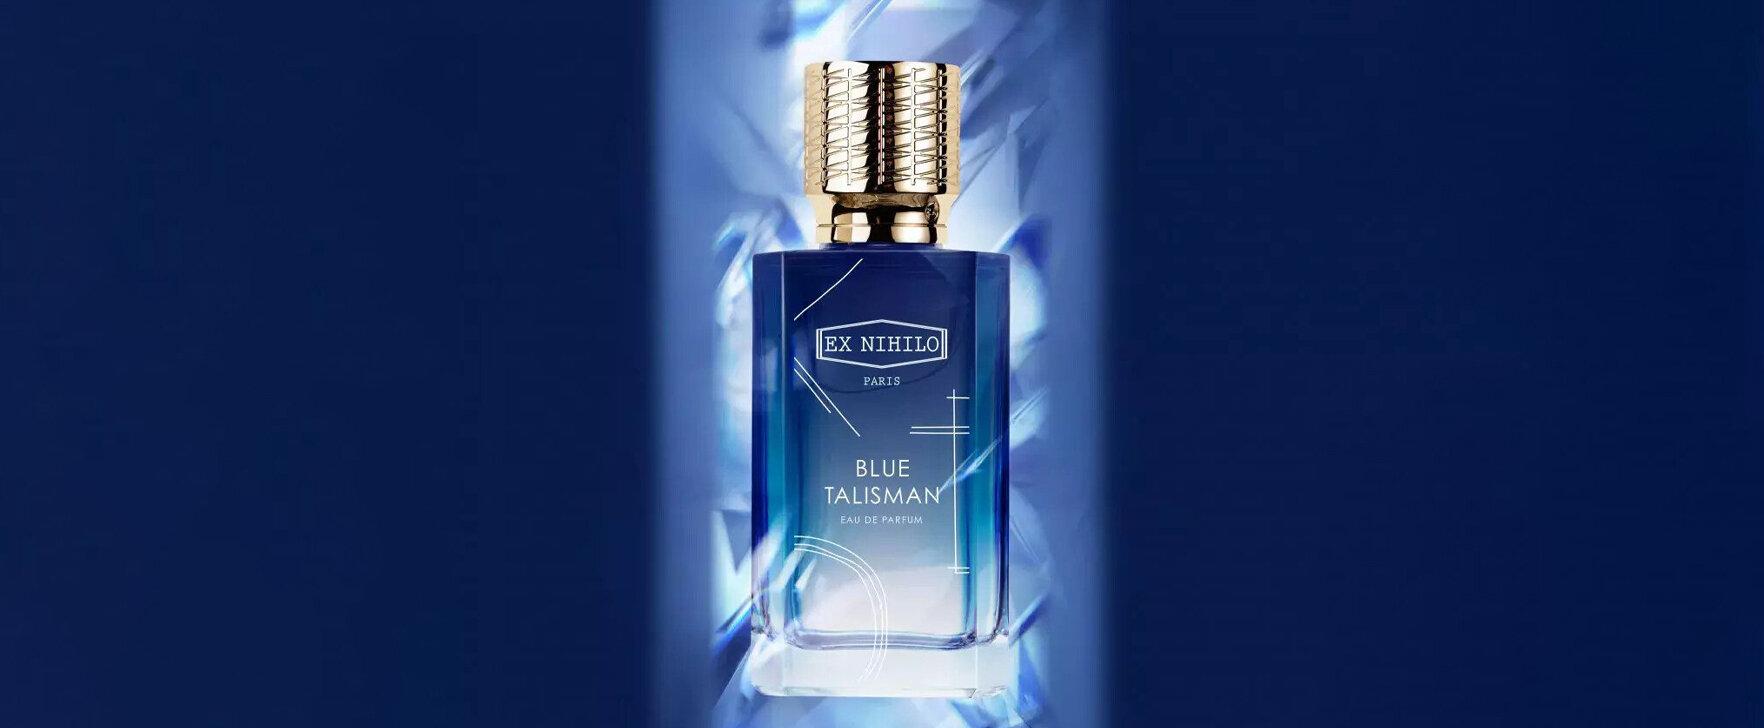 "Blue Talisman": A Limited Edition Eau de Parfum To Celebrate Ex Nihilo's Anniversary